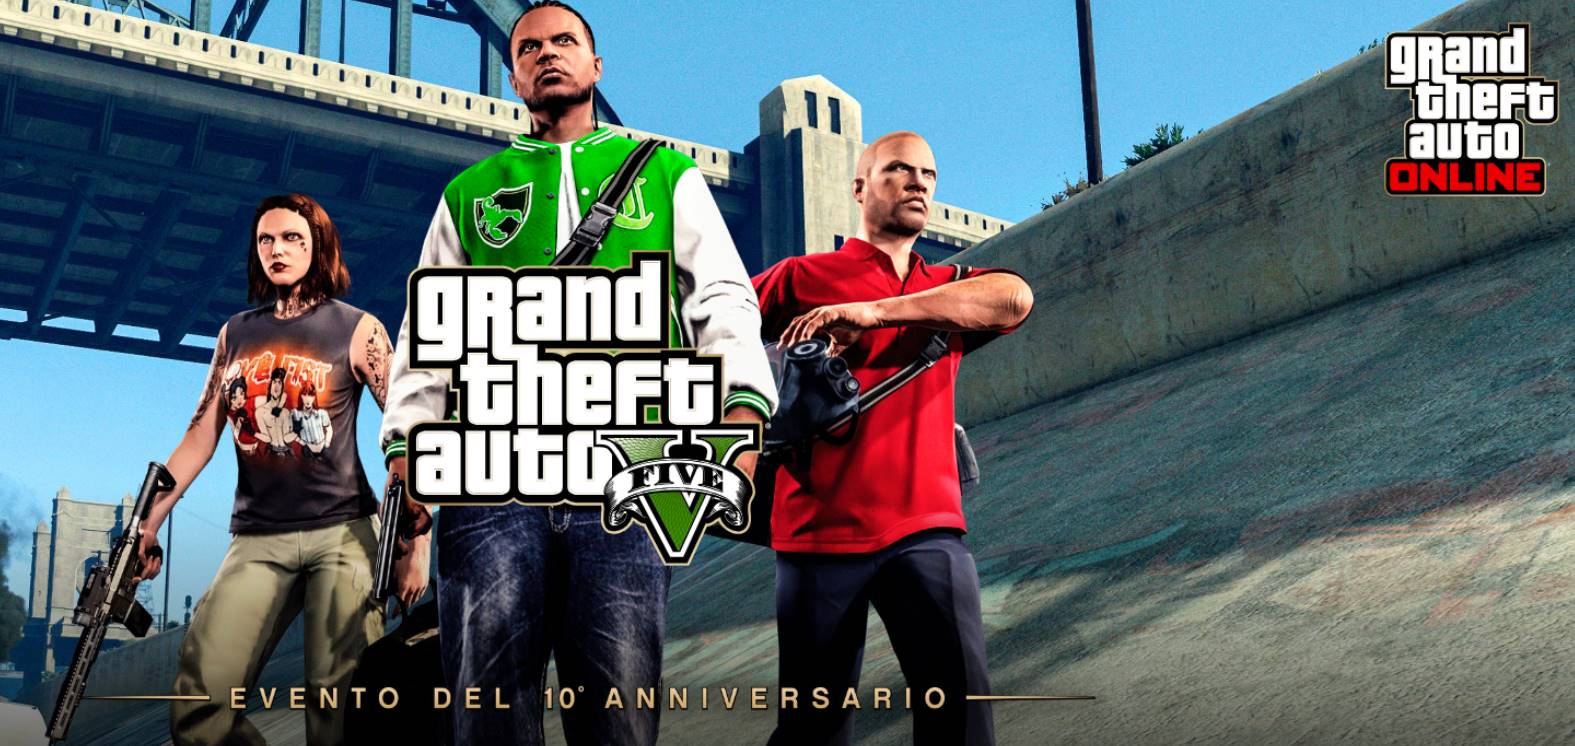 festeggiamenti per i dieci anni di Grand Theft Auto V in GTA Online